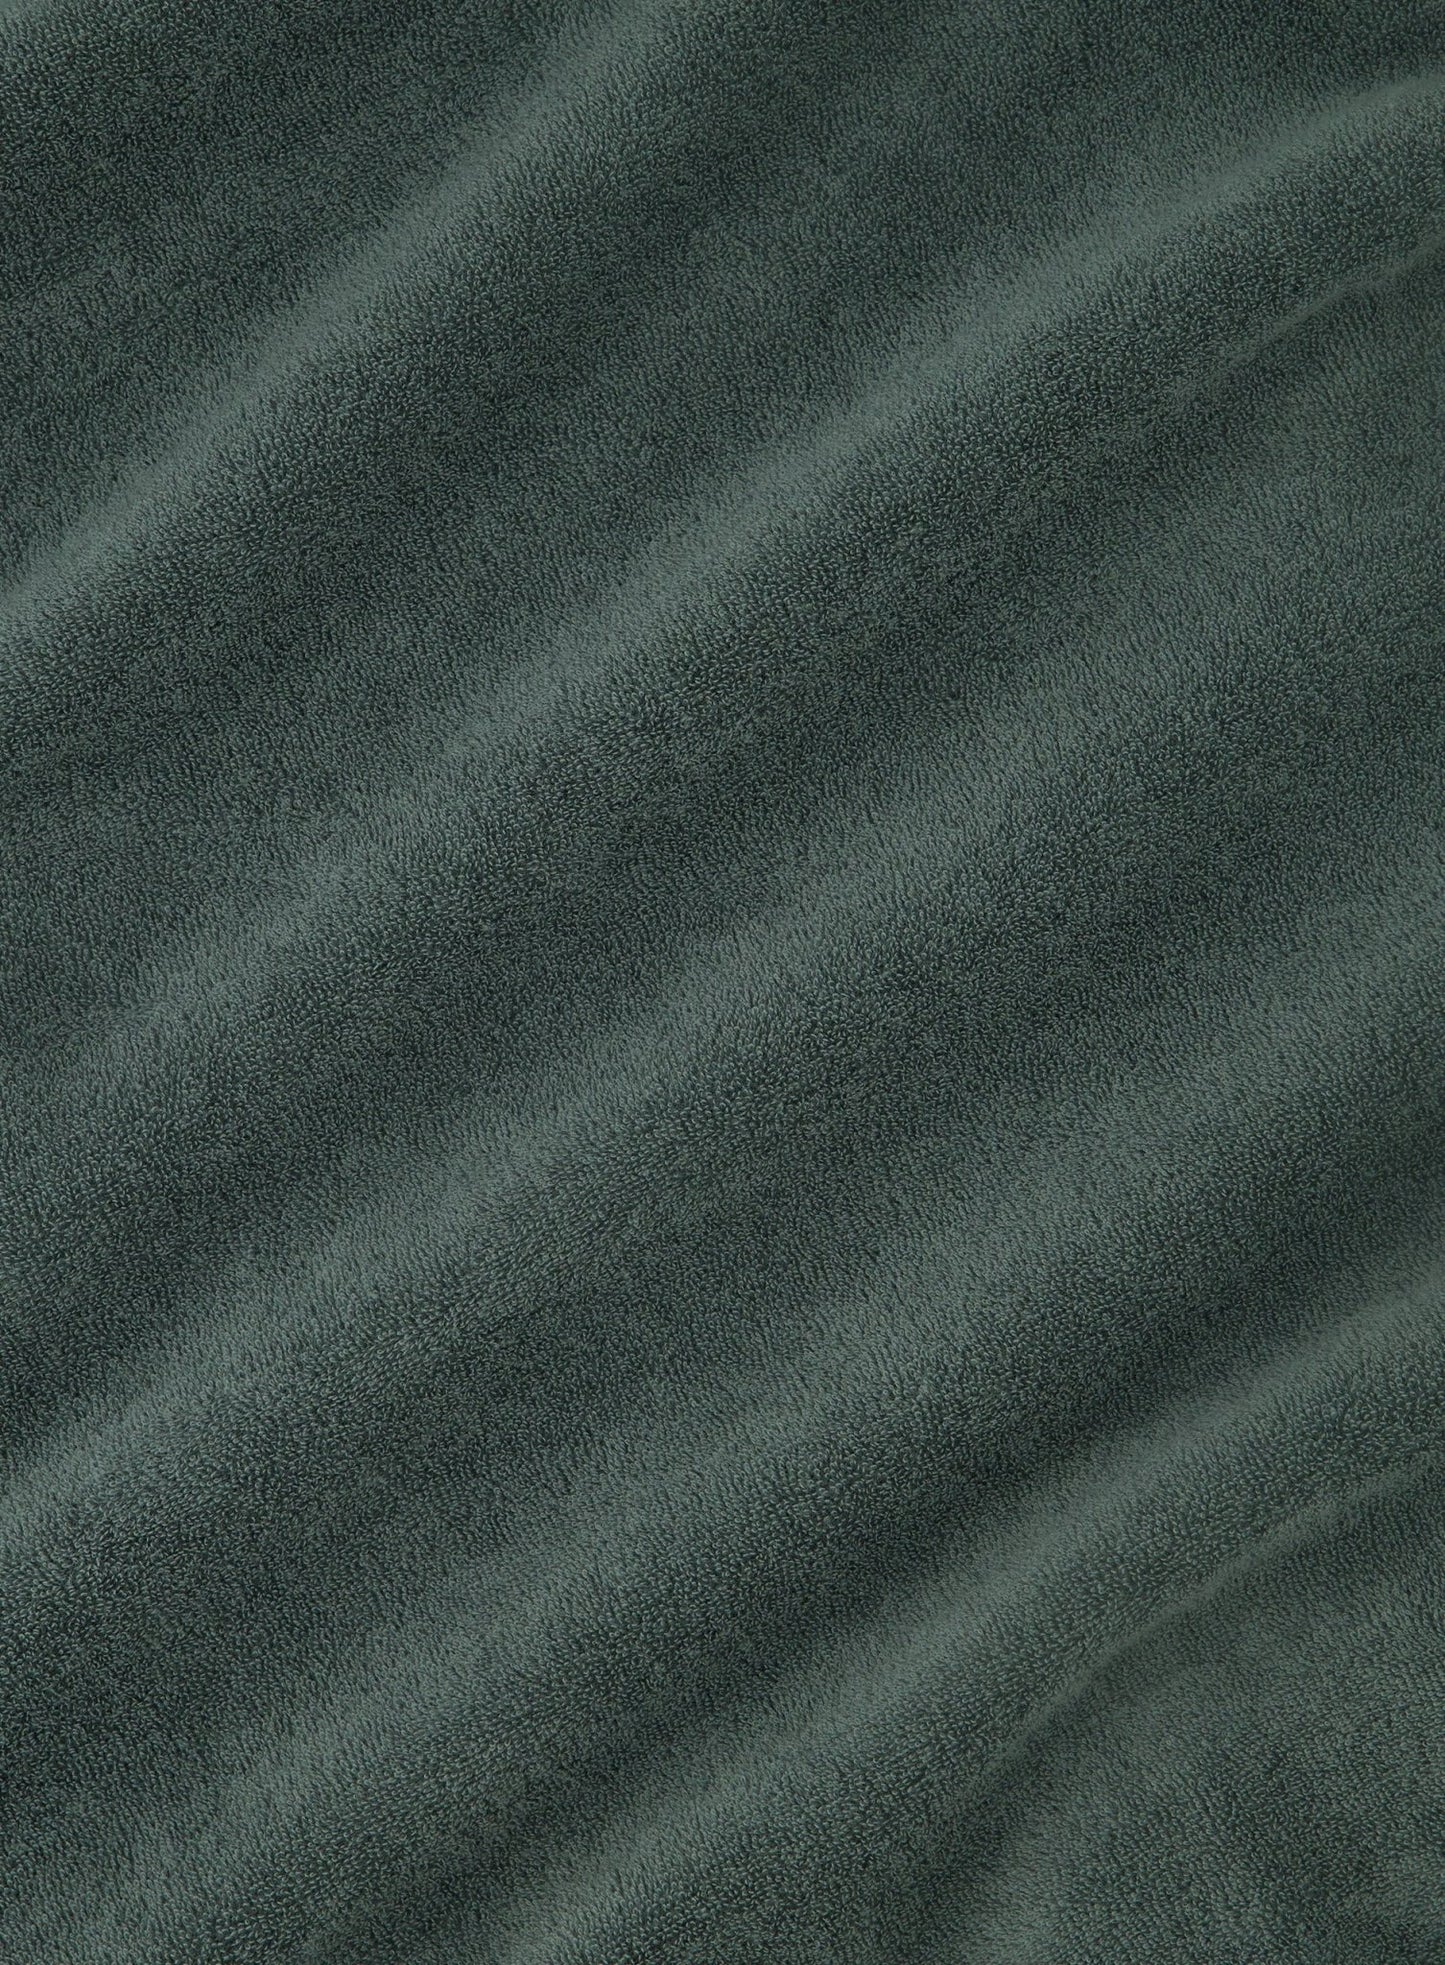 Poloshirt met lange mouwen van badstof | Groen